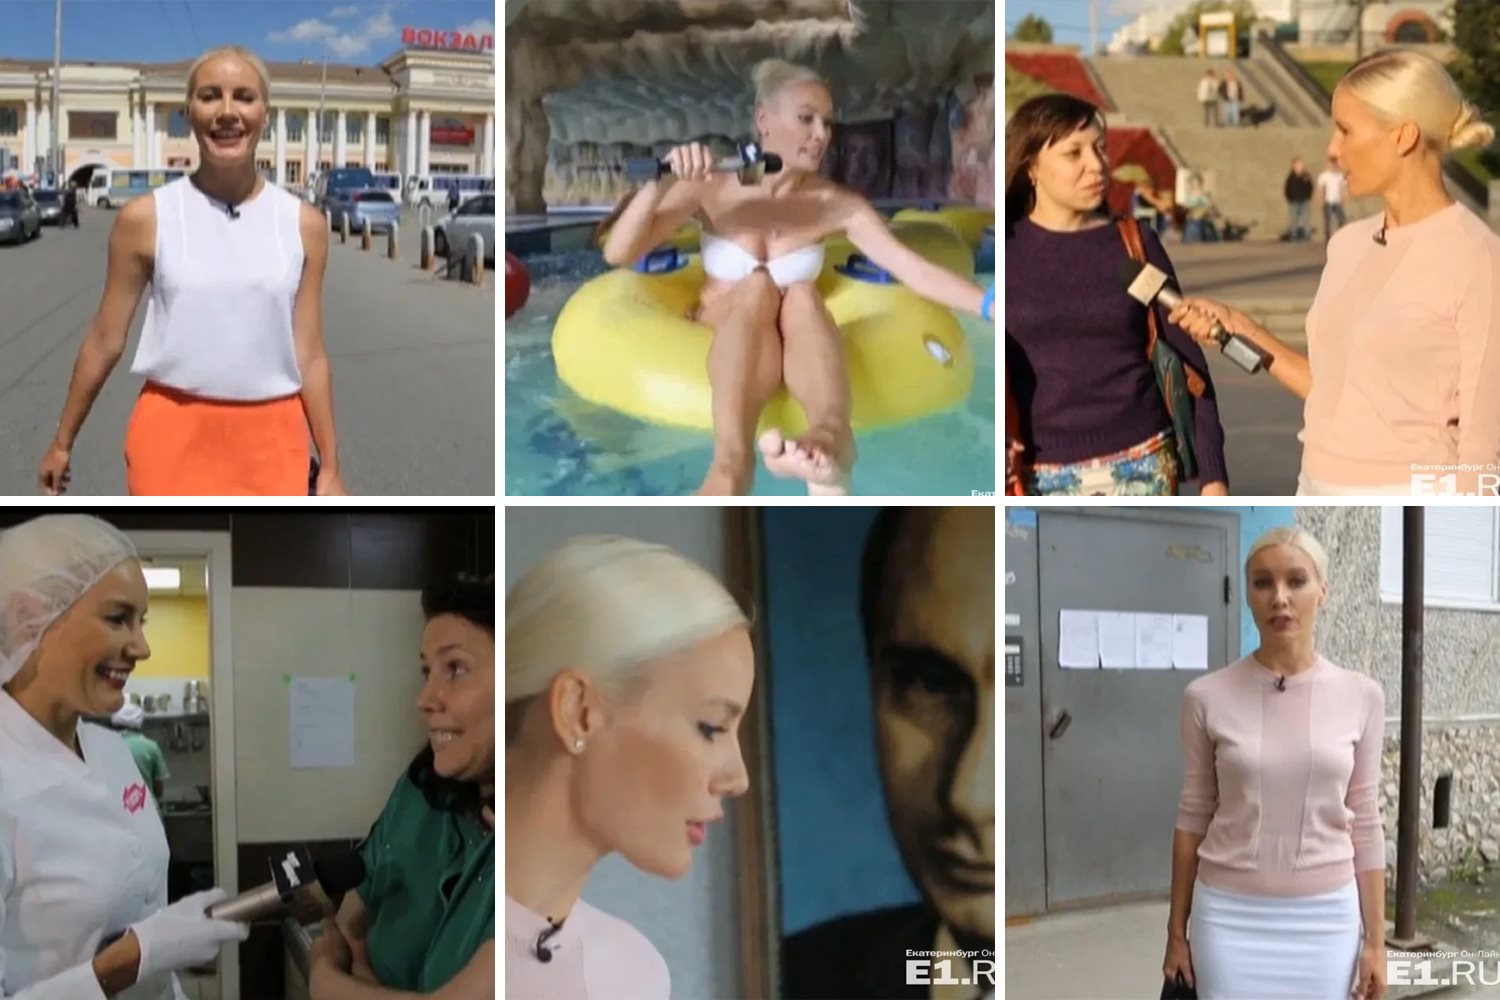 Реалити-шоу «Ревизорро» — римейк украинской программы «Ревизор» — стартовало на «Пятнице» (экс-MTV Россия) в июне 2014 года. Екатеринбург был одним из первых городов, куда приехала съёмочная бригада шоу